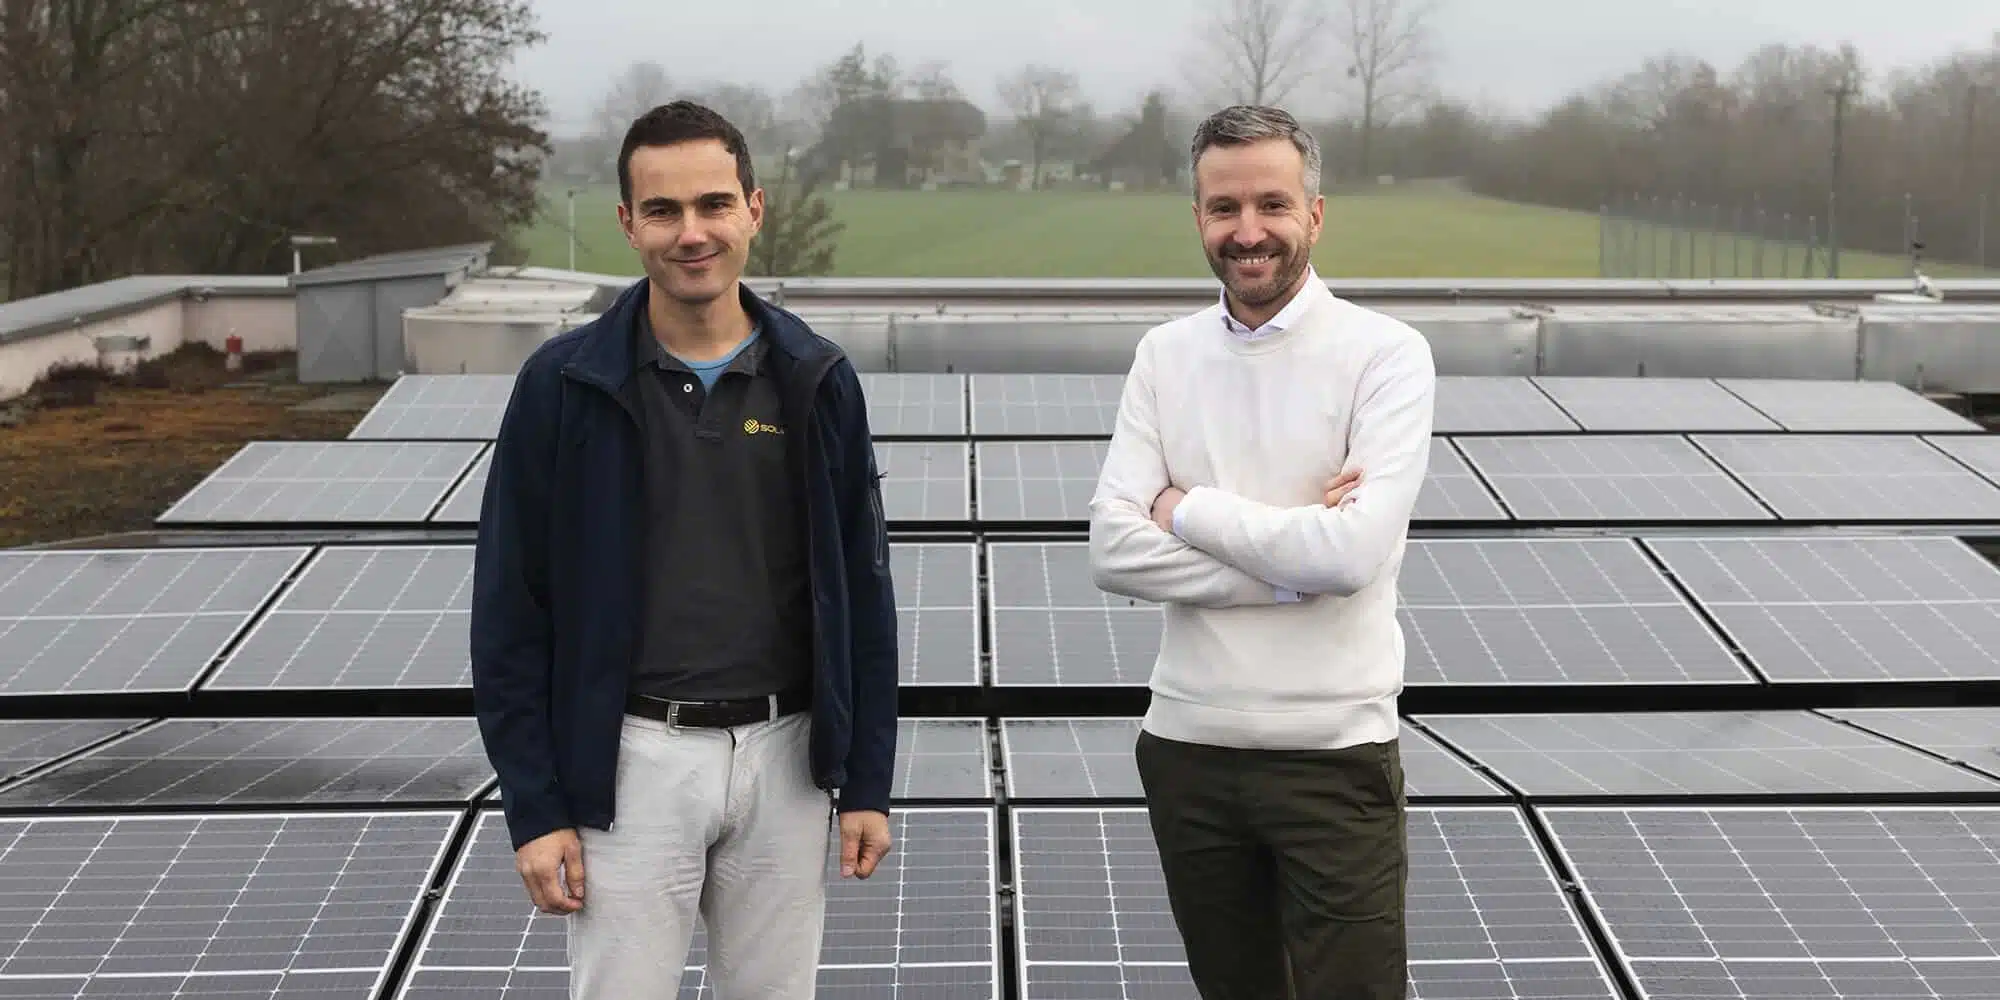 Clyde investiert in Solarprojekte von Solarify und ermöglicht dadurch kostenloses Laden mit immer mehr Solarstrom. Mehr dazu auf dem E-Mobility Blog!